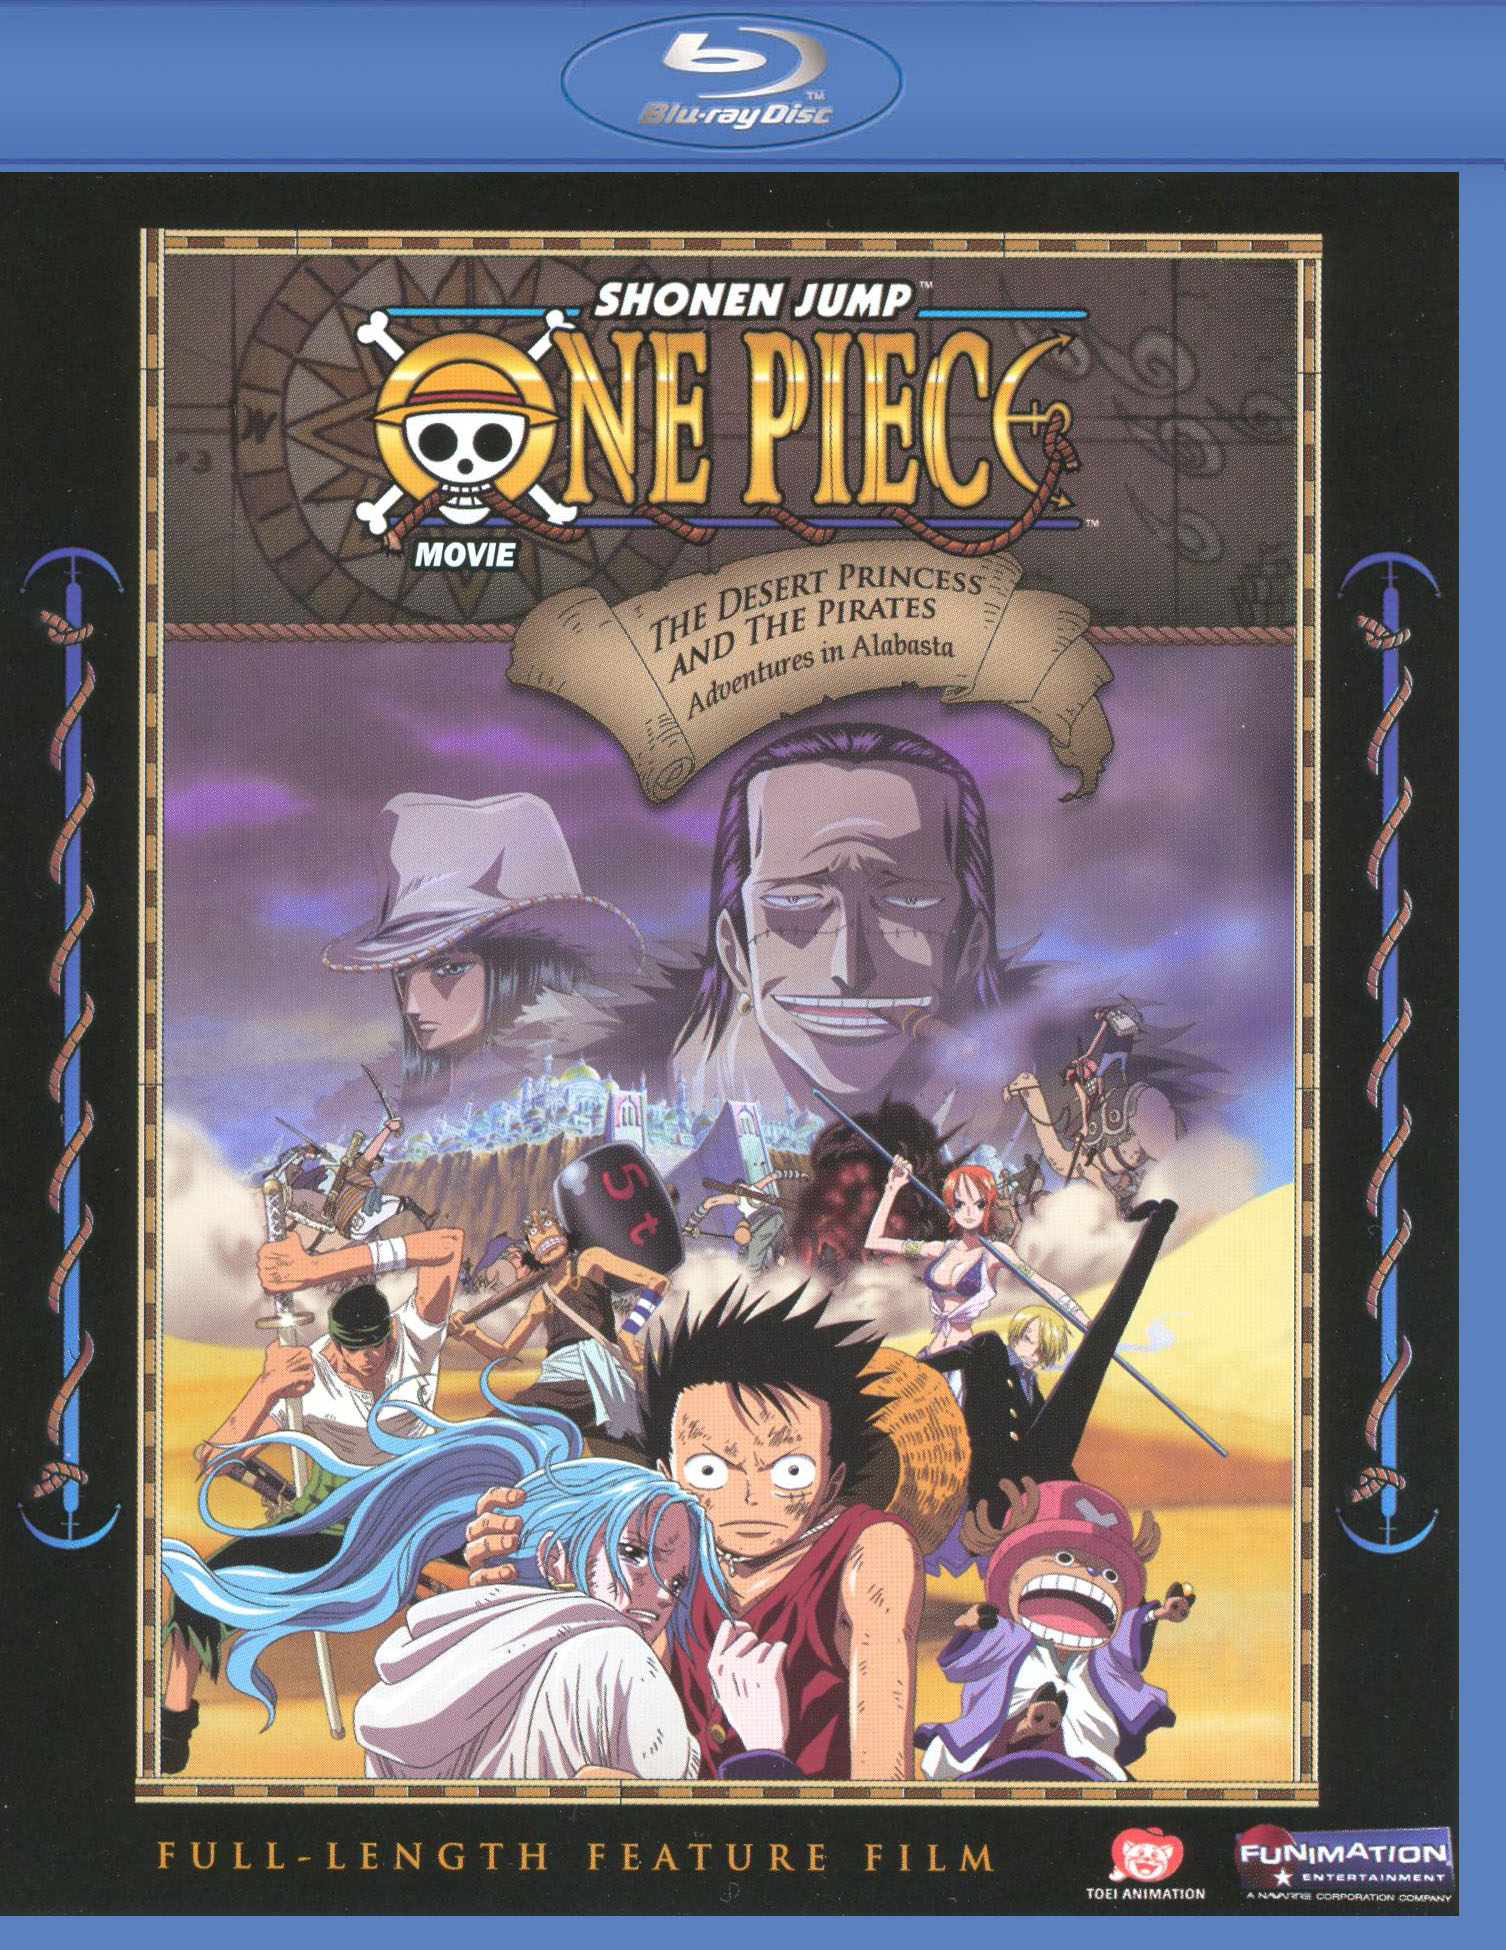 Blu-ray Review: One Piece – Film Z